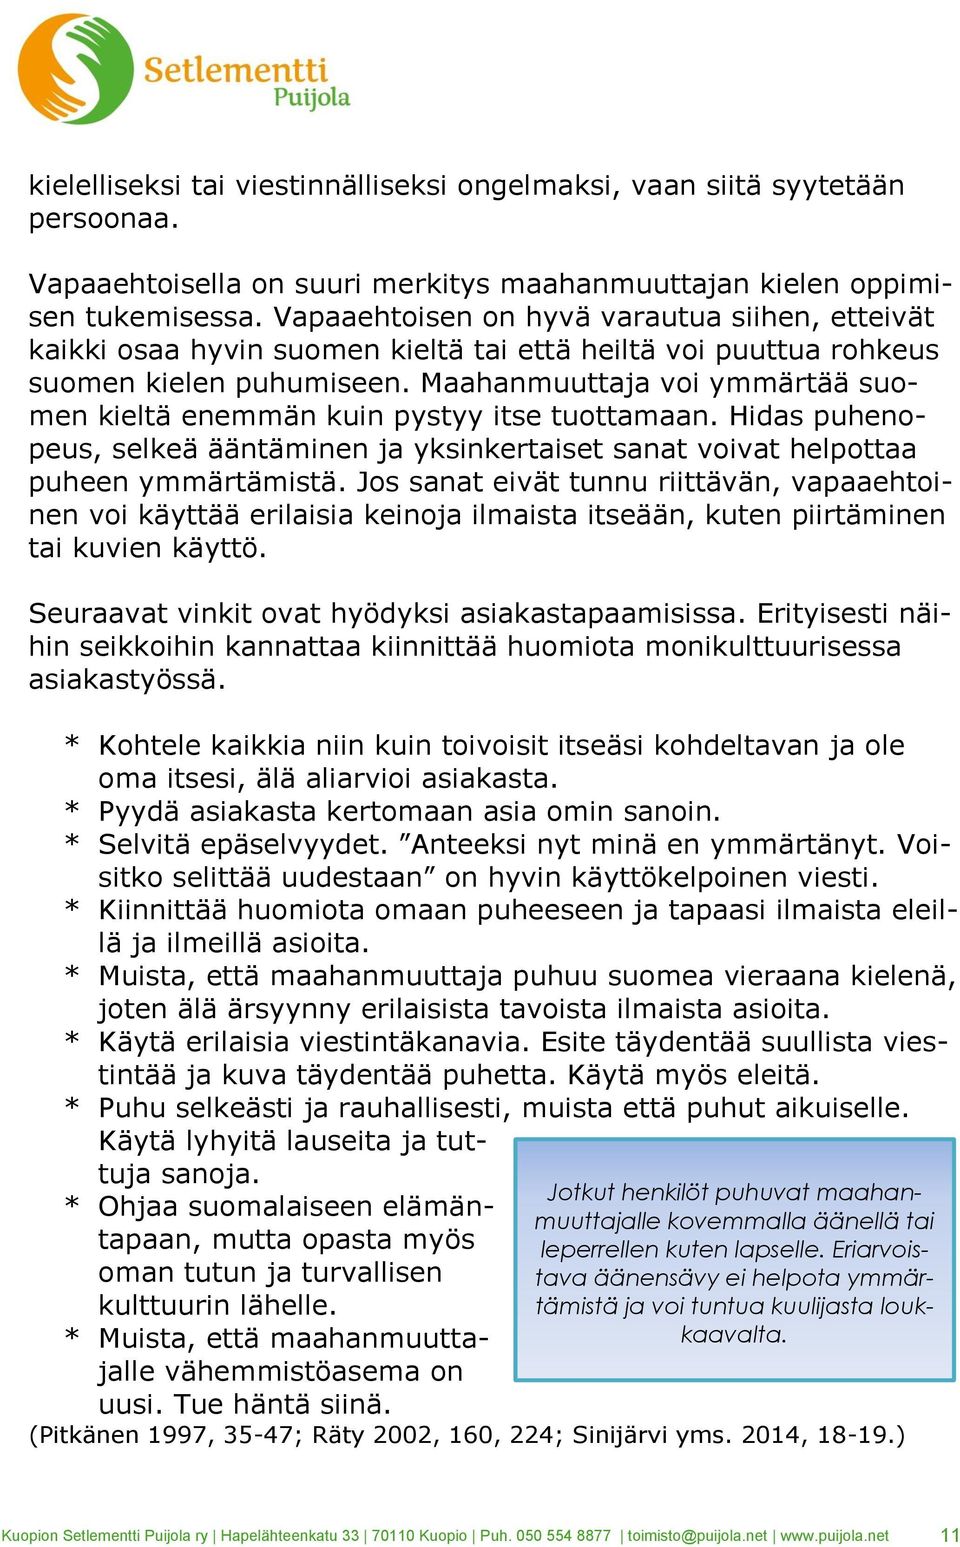 Maahanmuuttaja voi ymmärtää suomen kieltä enemmän kuin pystyy itse tuottamaan. Hidas puhenopeus, selkeä ääntäminen ja yksinkertaiset sanat voivat helpottaa puheen ymmärtämistä.